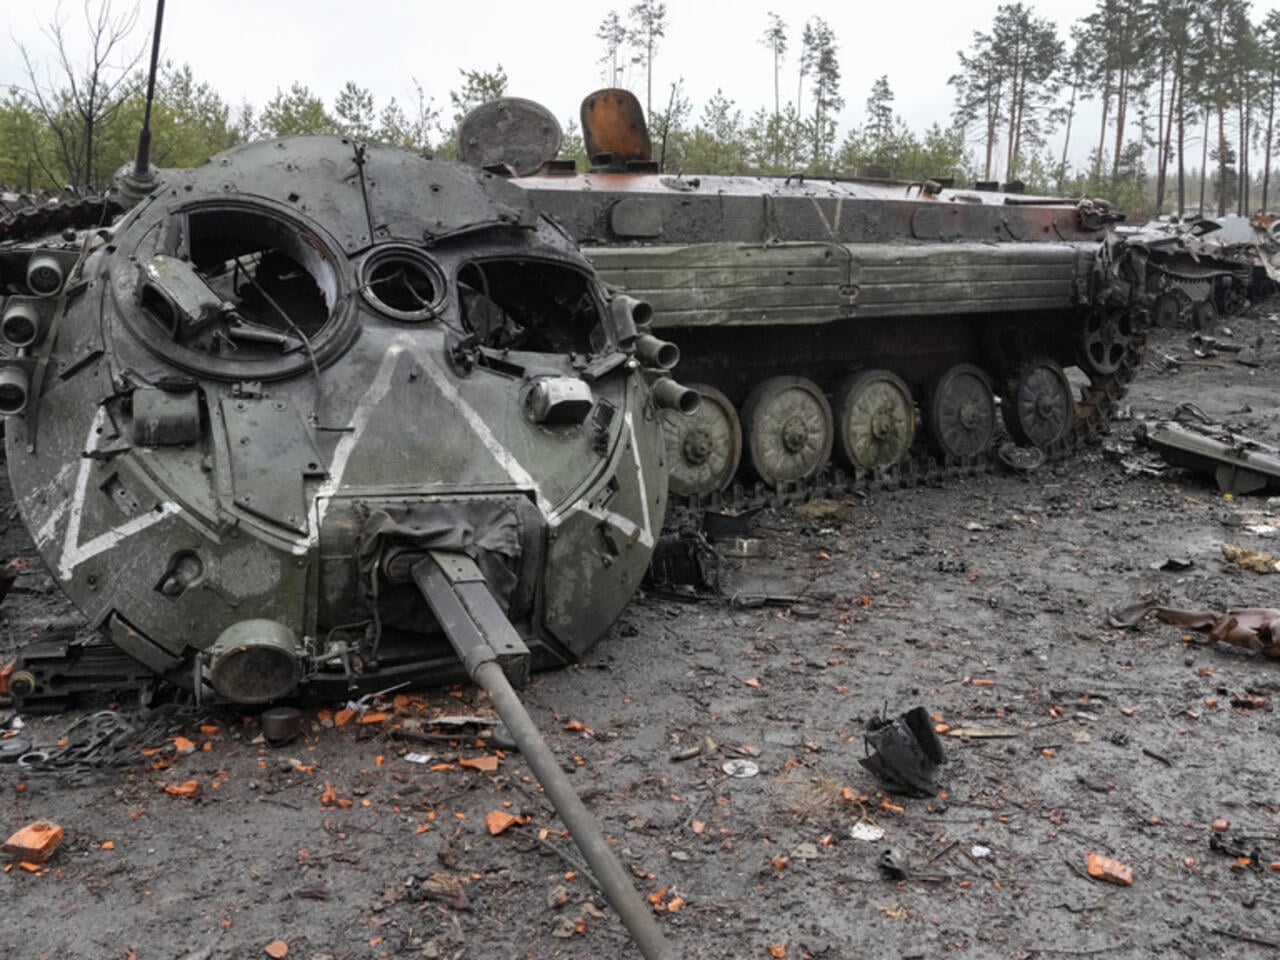 روسيا ربحت "معركة الدبابات"المعول عليها من الغرب فلما لا تتوقف الحرب؟